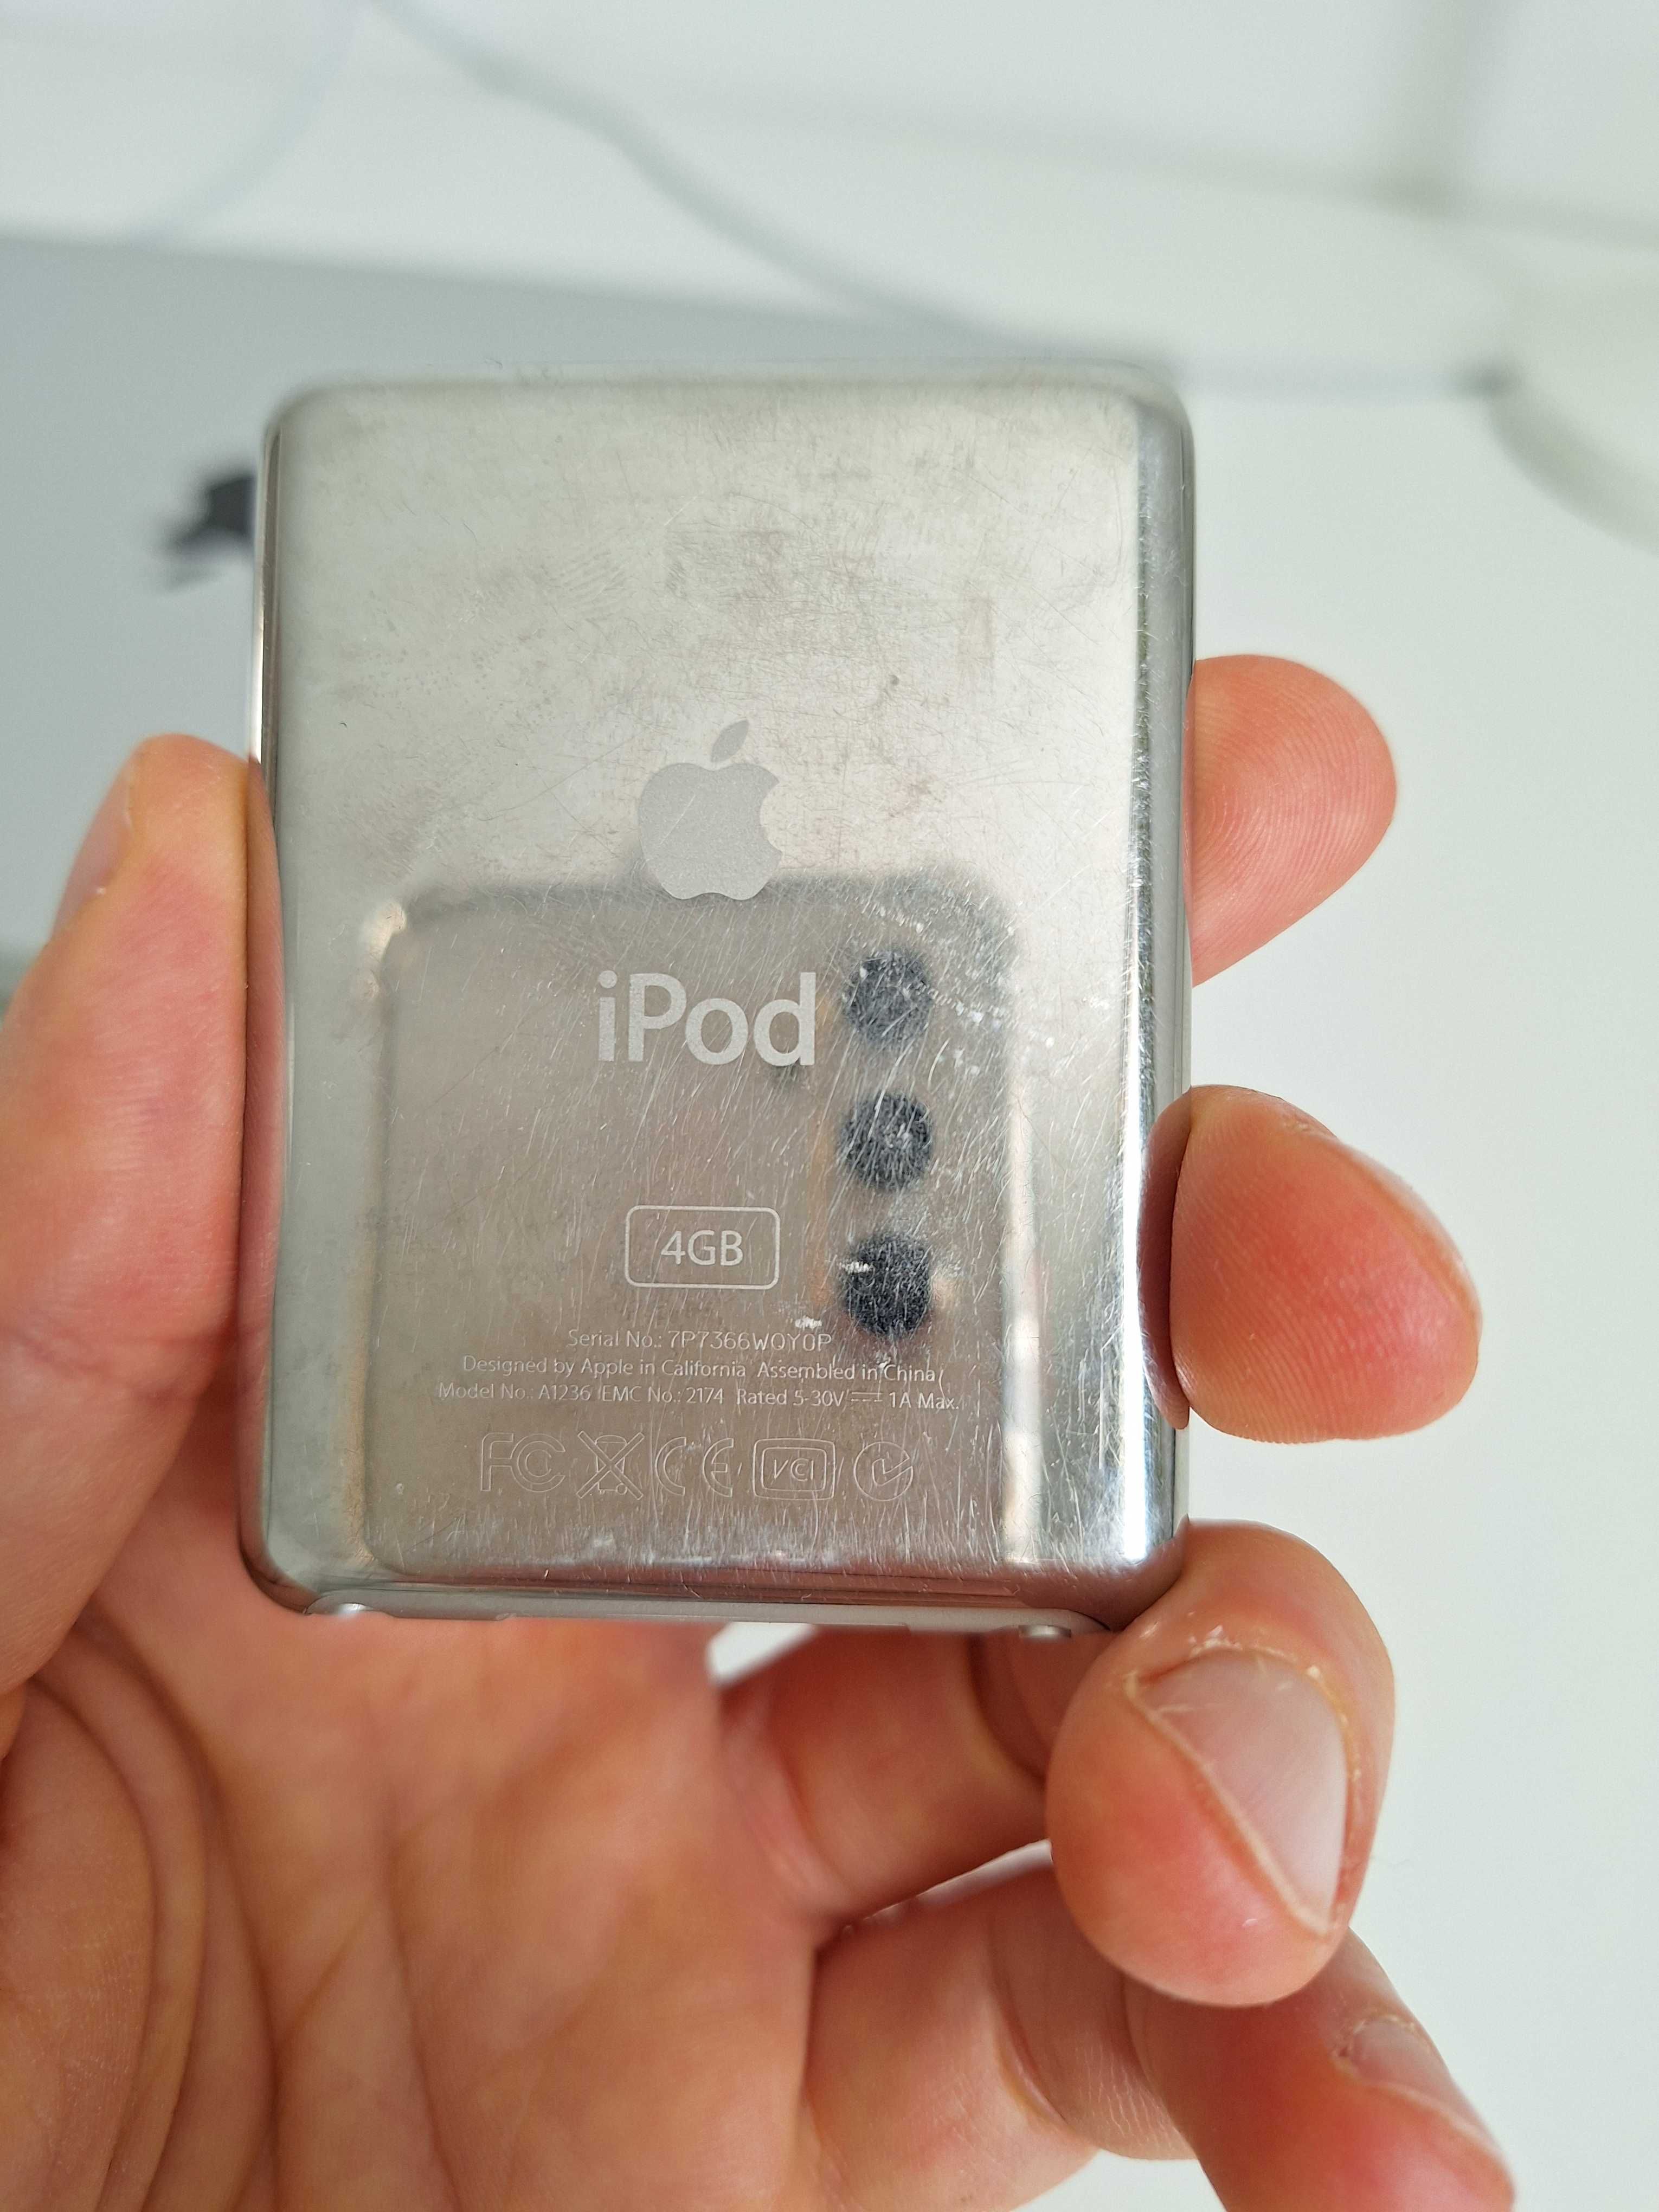 Apple iPod Nano Silver